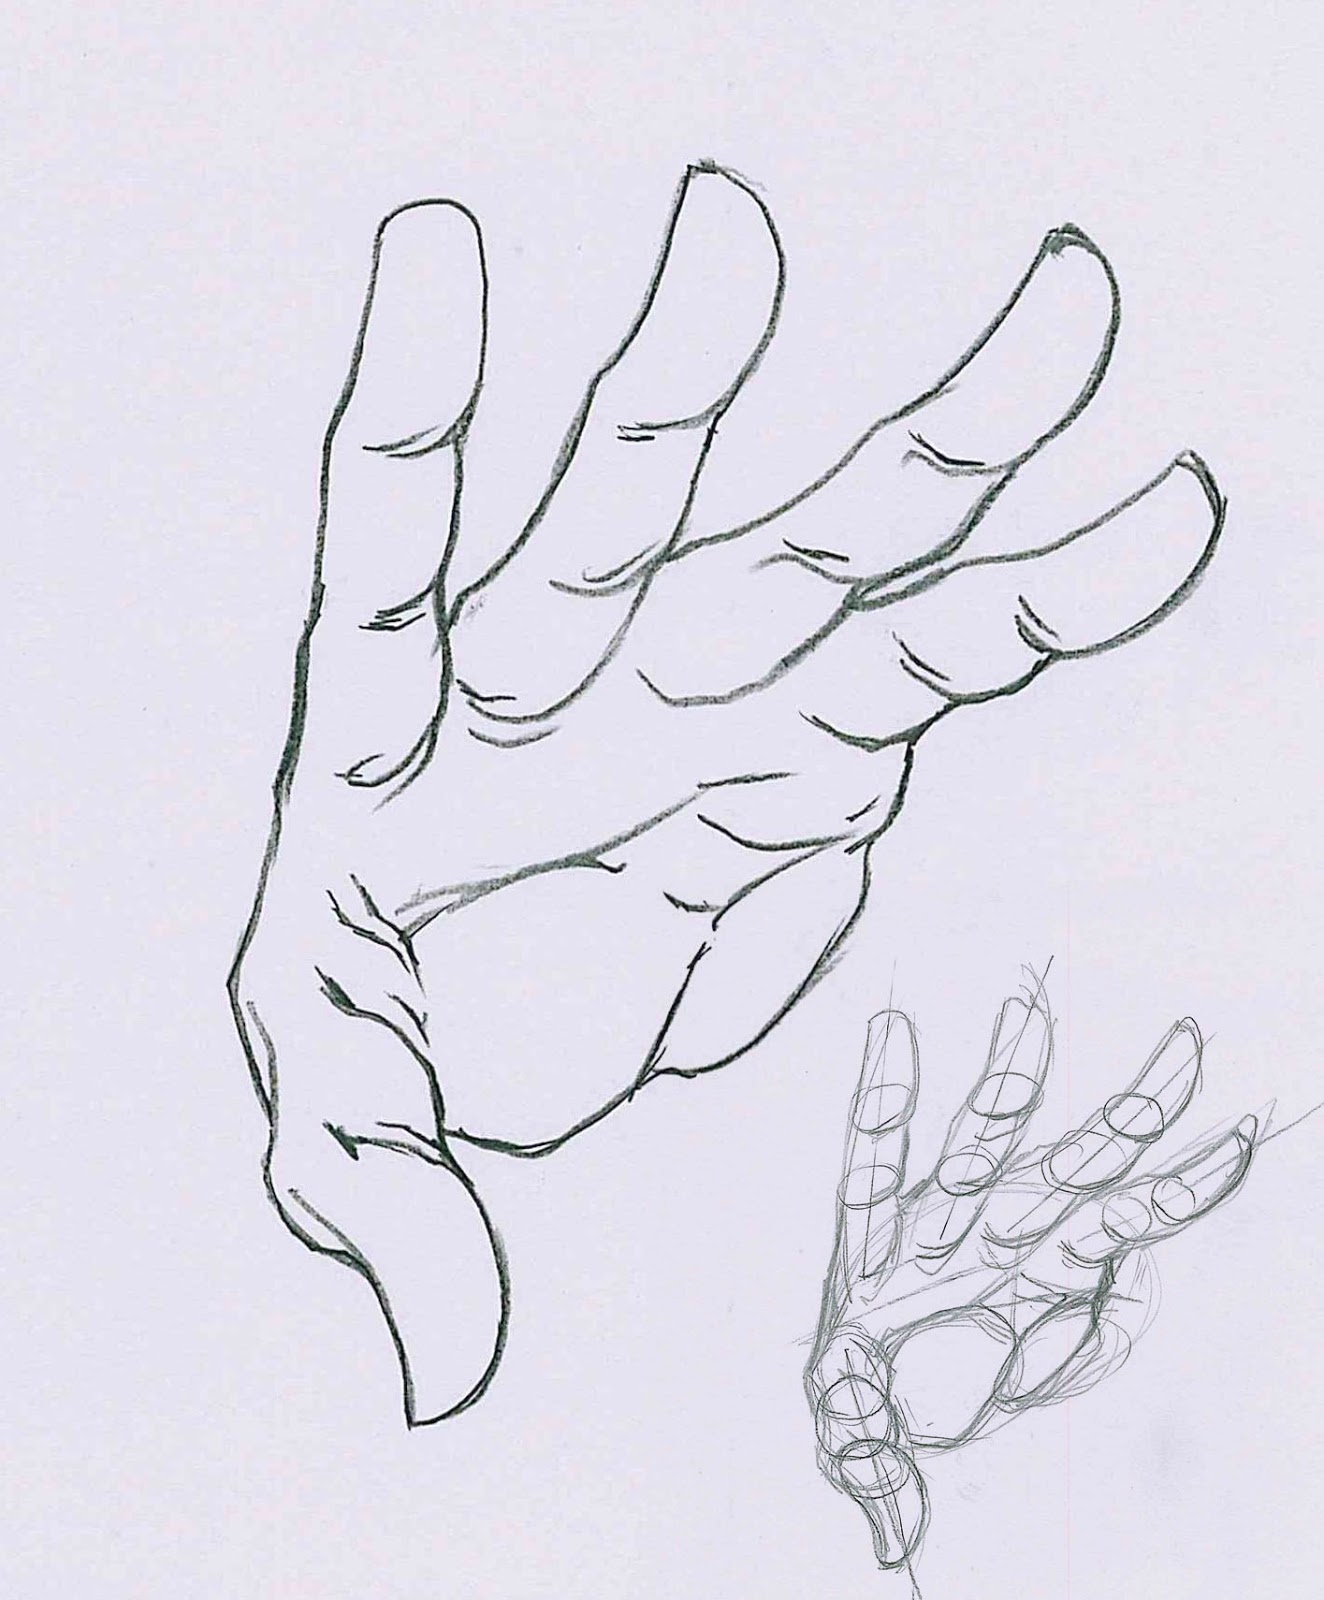 e per la testa disegno la mano e fosse umana ricordo che sto prendendo in esame un mecha umanoide